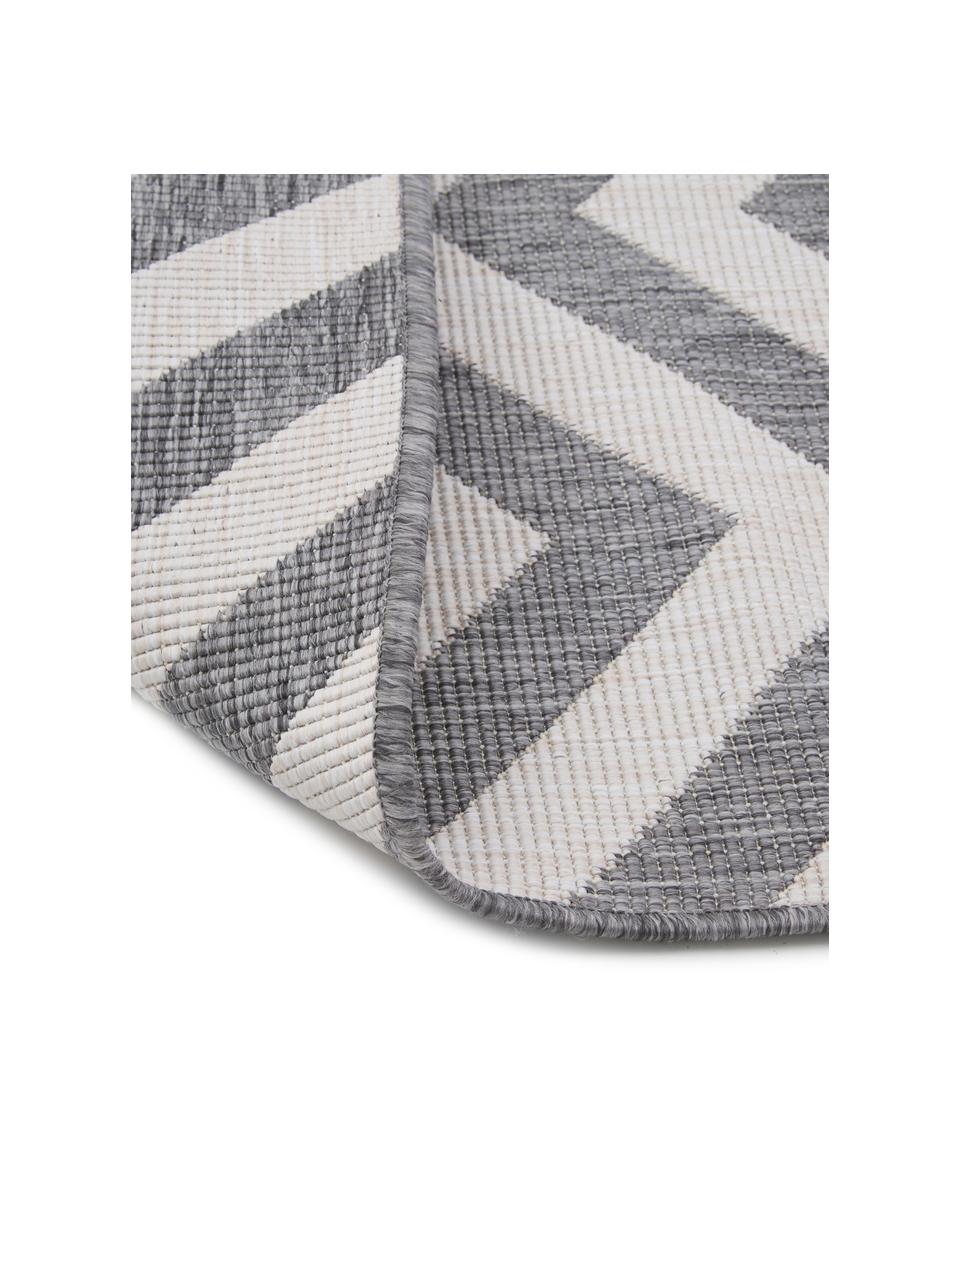 In- & Outdoor-Teppich Palma mit Zickzack-Muster, beidseitig verwendbar, 100% Polypropylen, Grau, Cremefarben, gemustert, B 160 x L 230 cm (Größe M)